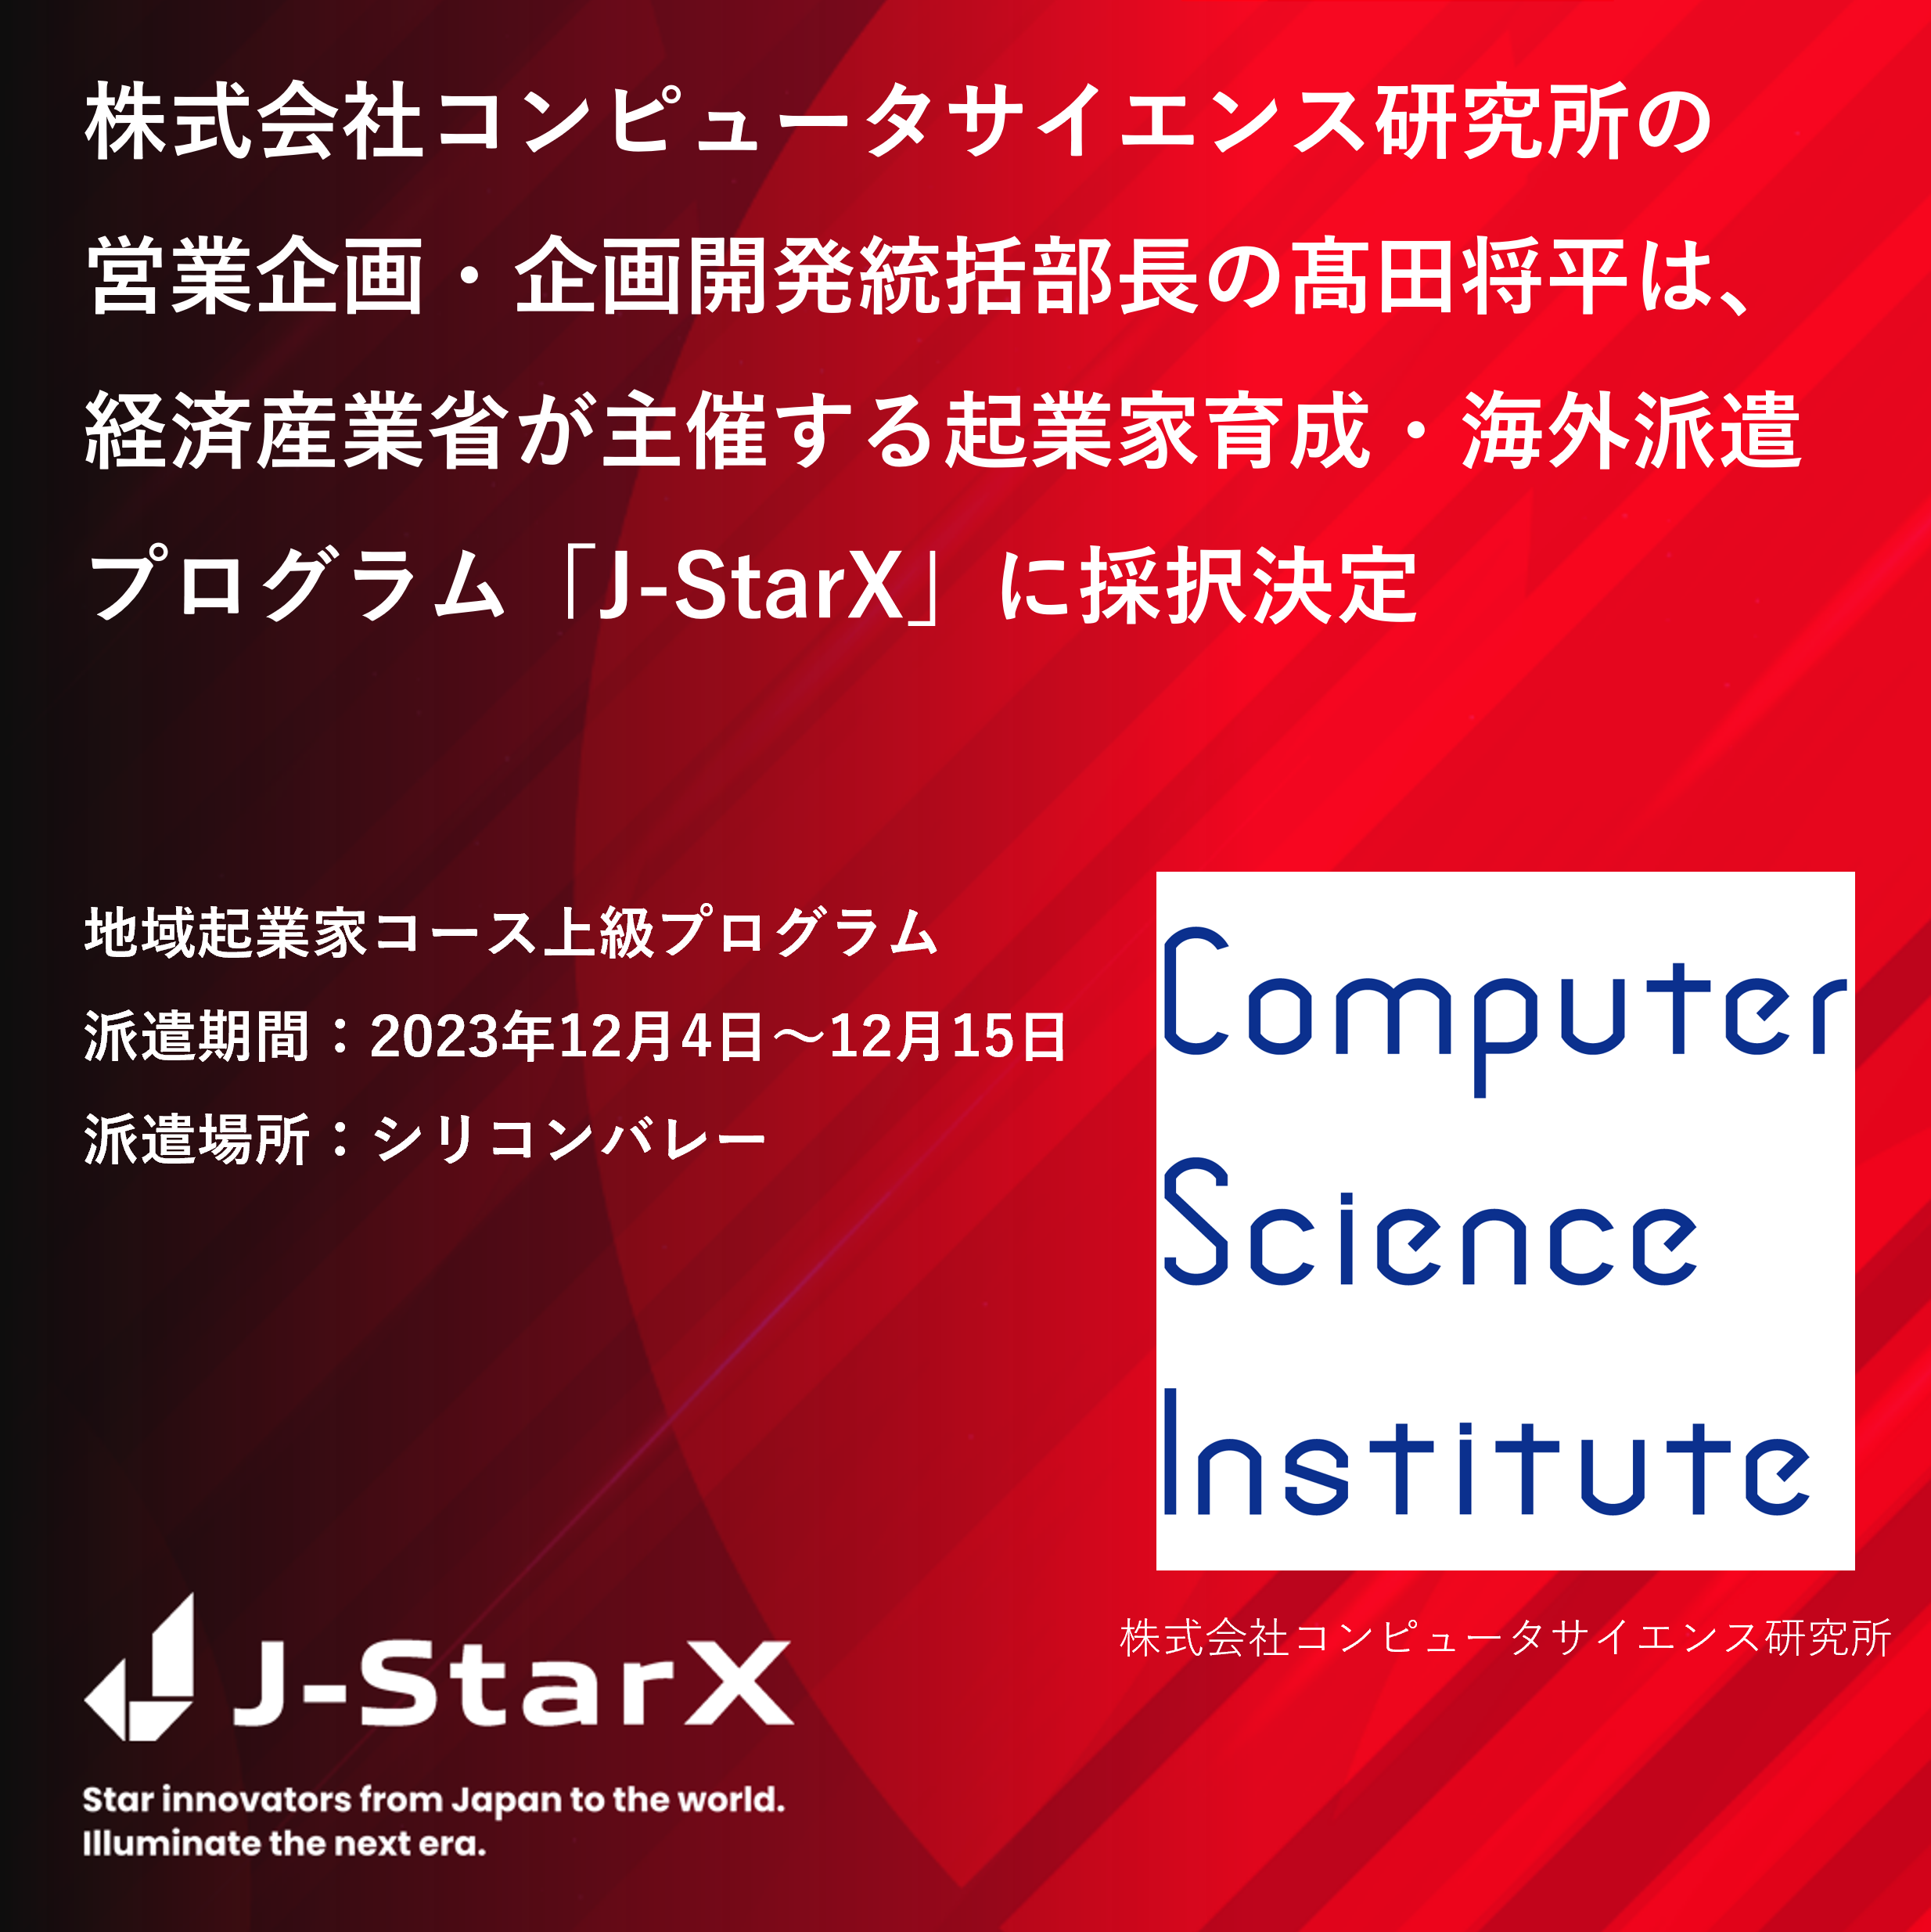 J-StarX